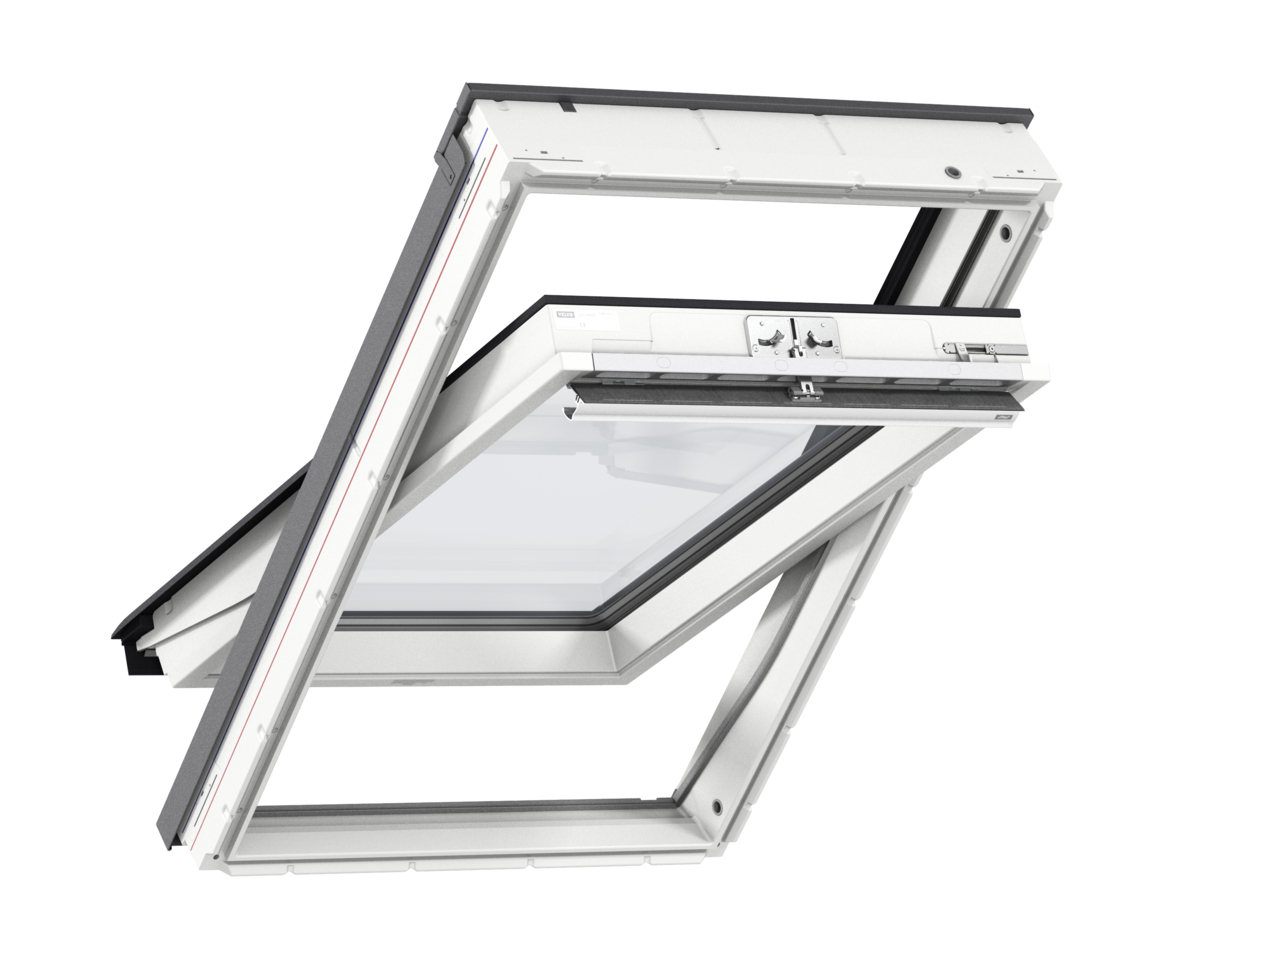 Мансардное двухкамерное белое окно Velux (Велюкс) GLU SK08 0061 114х140 см (ручка сверху), Деревянное мансардное окно в полиуретане с двухкамерным стеклопакетом GLU 0061 SK08 Окно 114*140 см, Velux